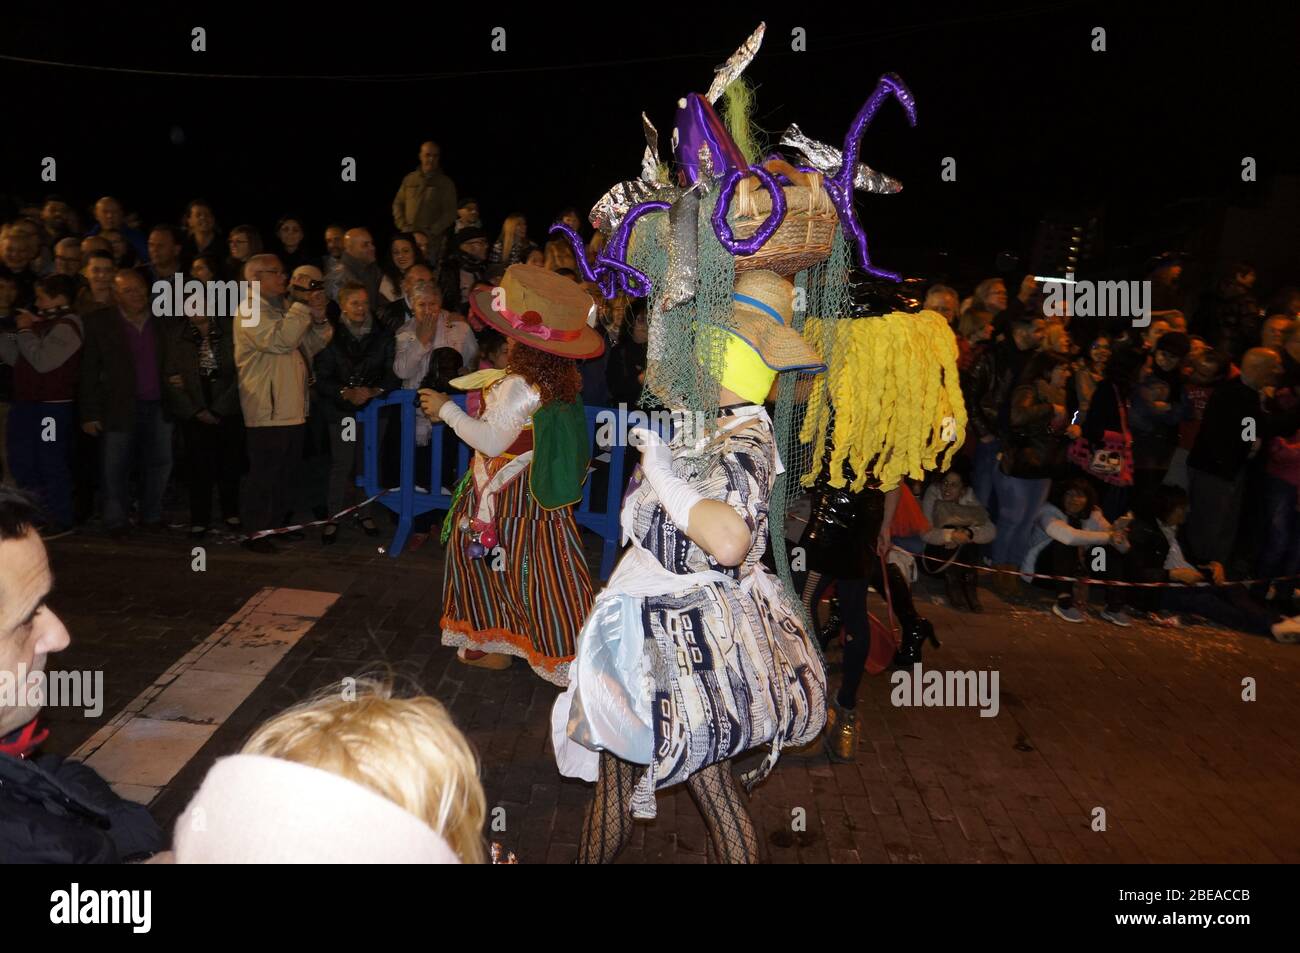 Karneval für Männer auf Stöckelschuhen - Macarita ponte tacon, Puerto de la Cruz, Teneriffa, Kanaren, Spanien Stock Photo